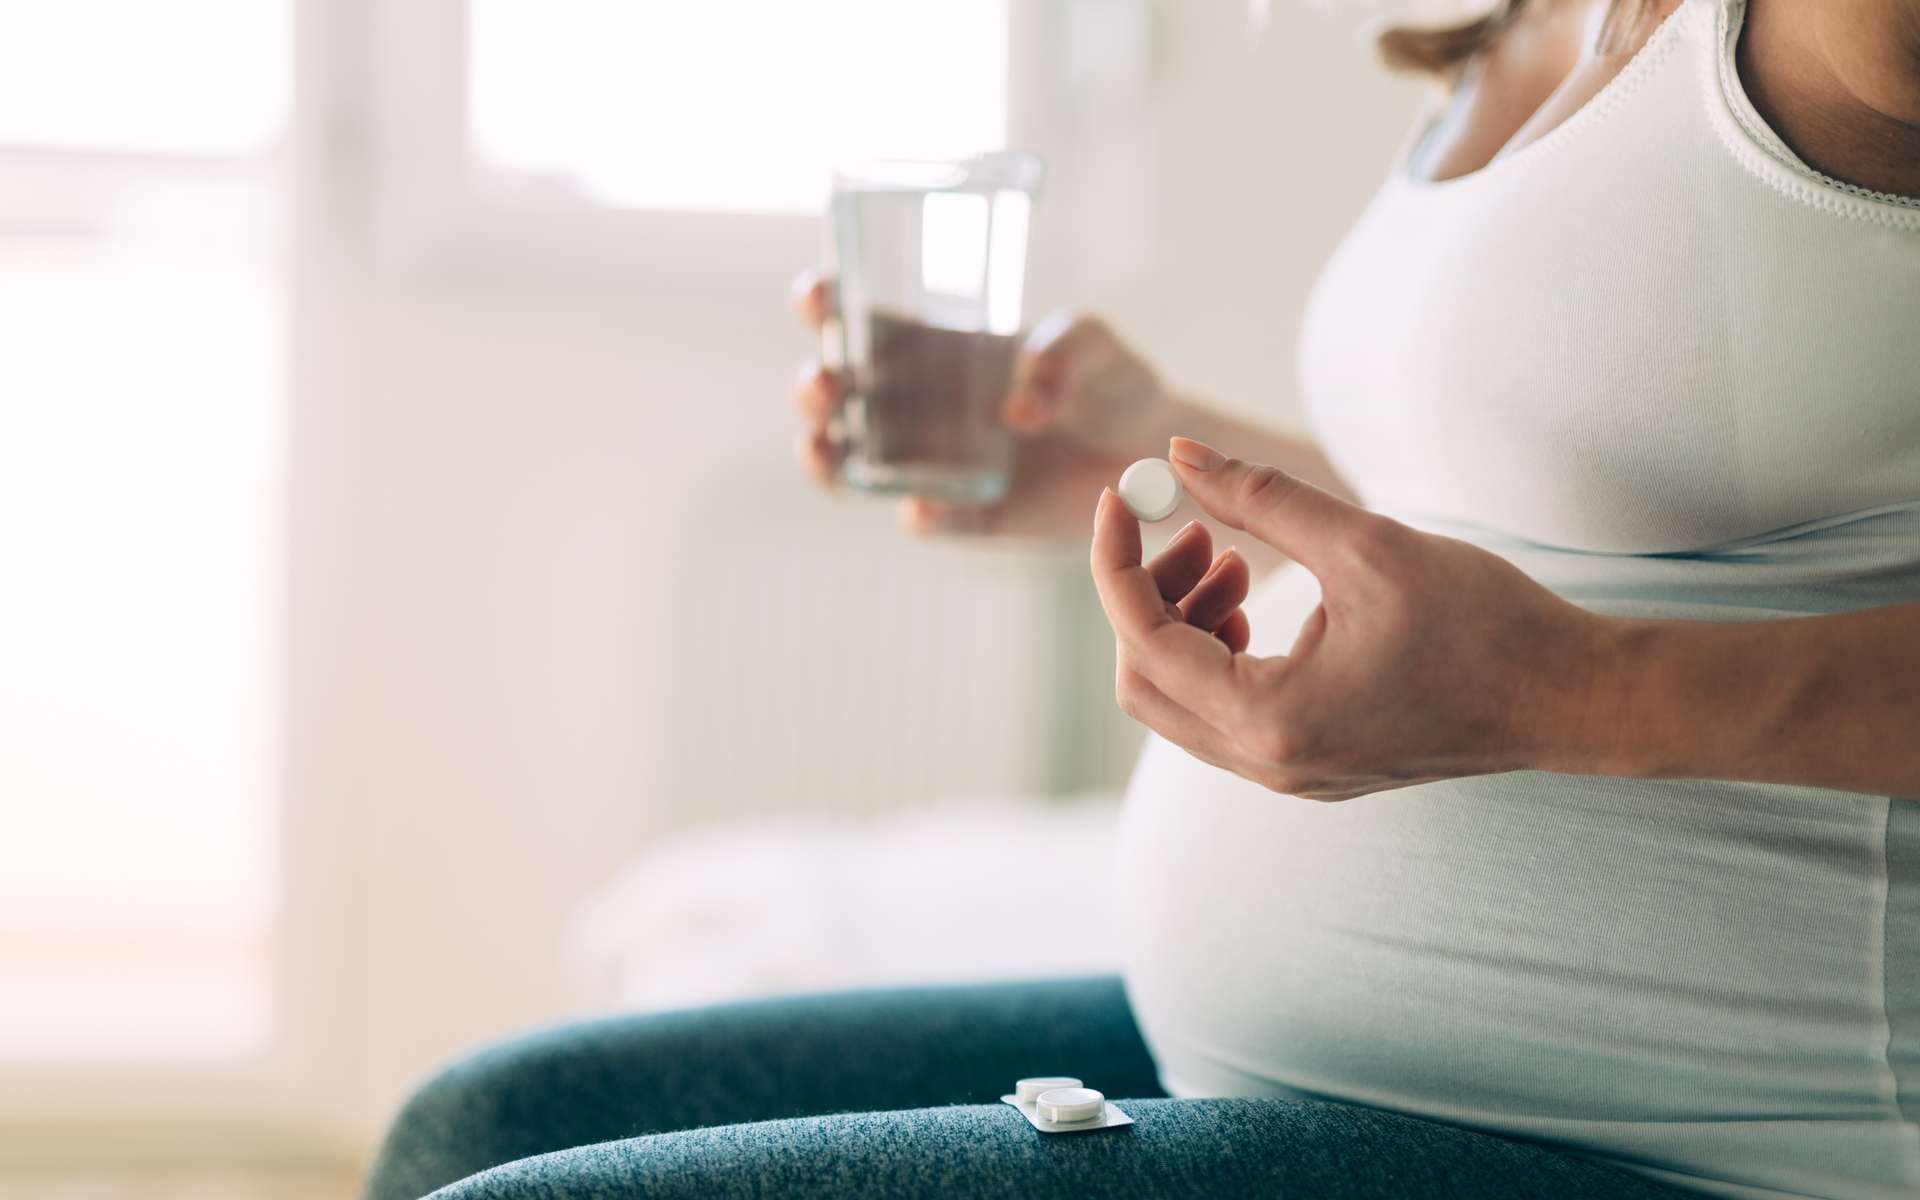 Femme enceinte : cet antiépileptique expose le bébé à un risque accru de troubles neurologiques